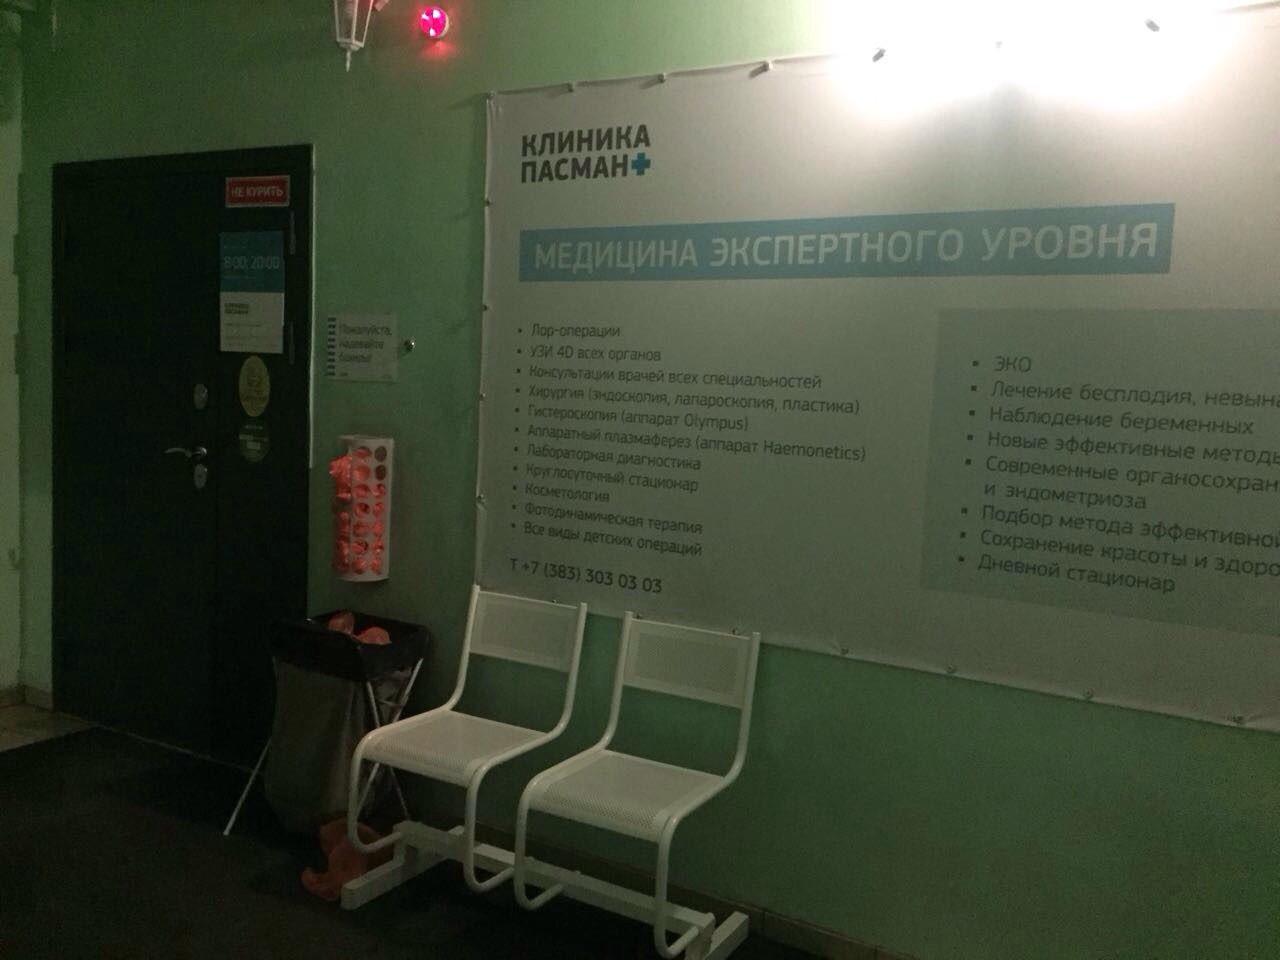 Пасман клиника блюхера новосибирск